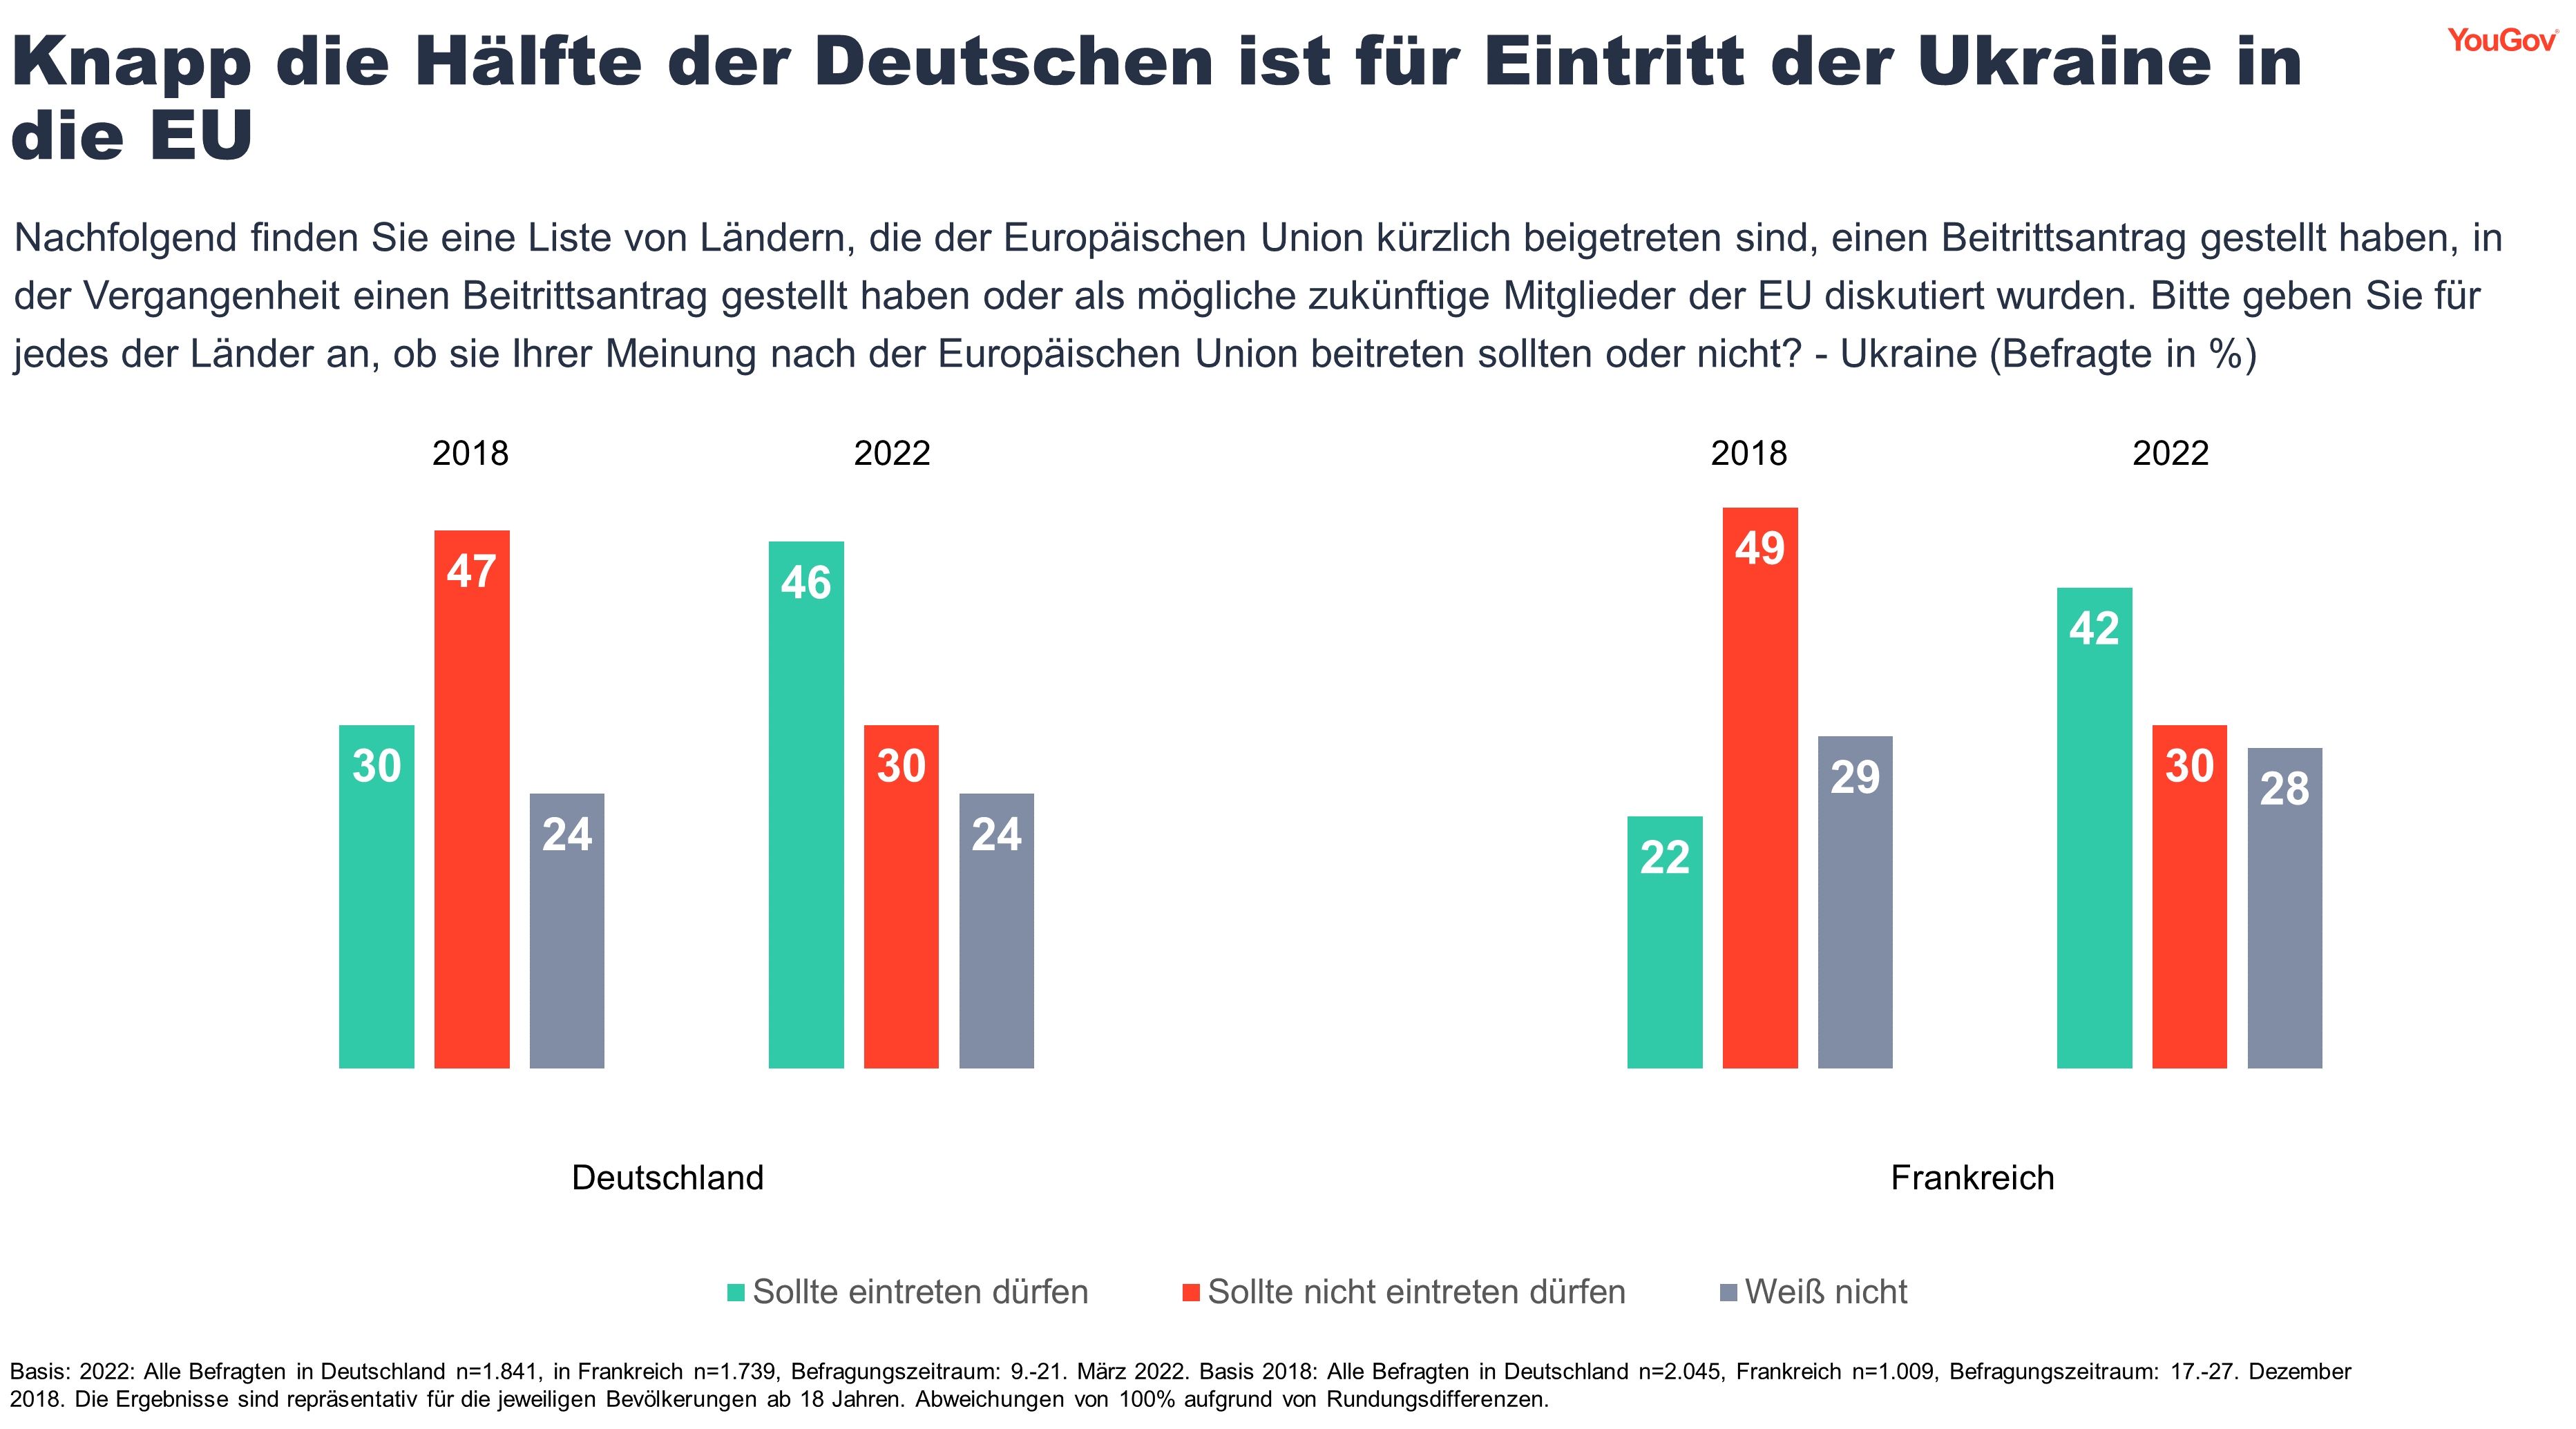 Knapp die Hälfte der Deutschen ist für Eintritt der Ukraine in die EU